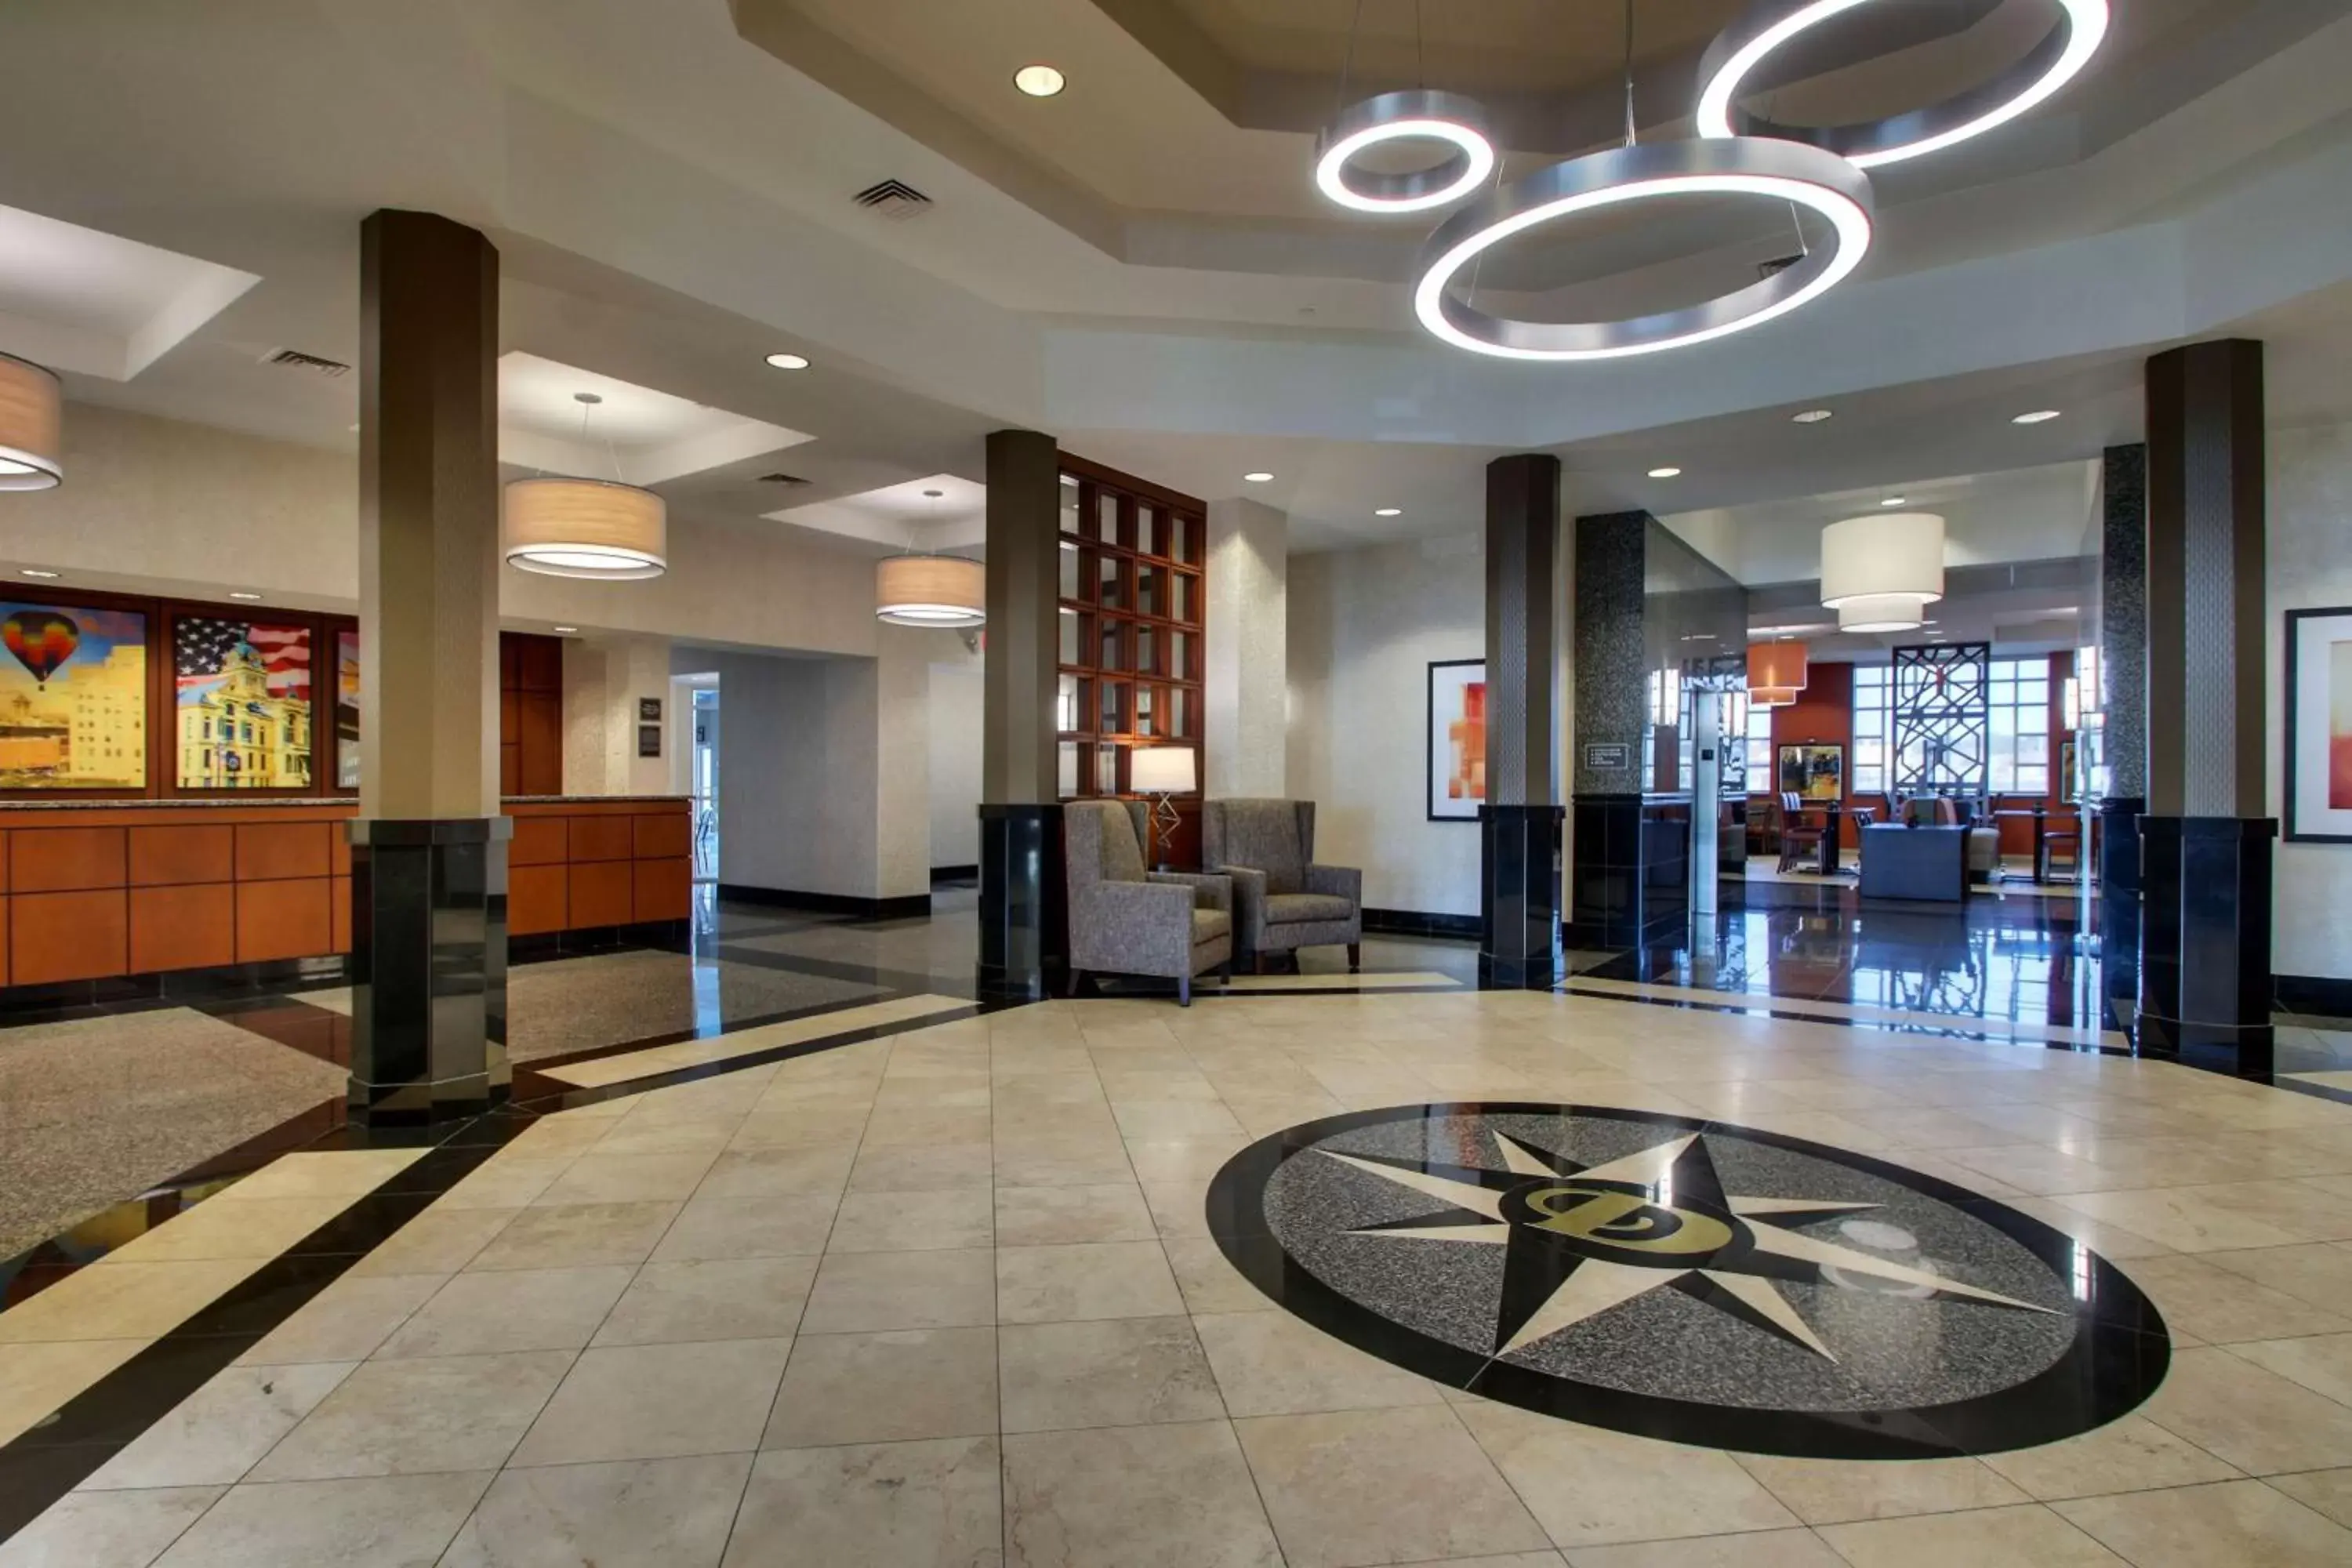 Lobby or reception, Lobby/Reception in Drury Inn & Suites Findlay